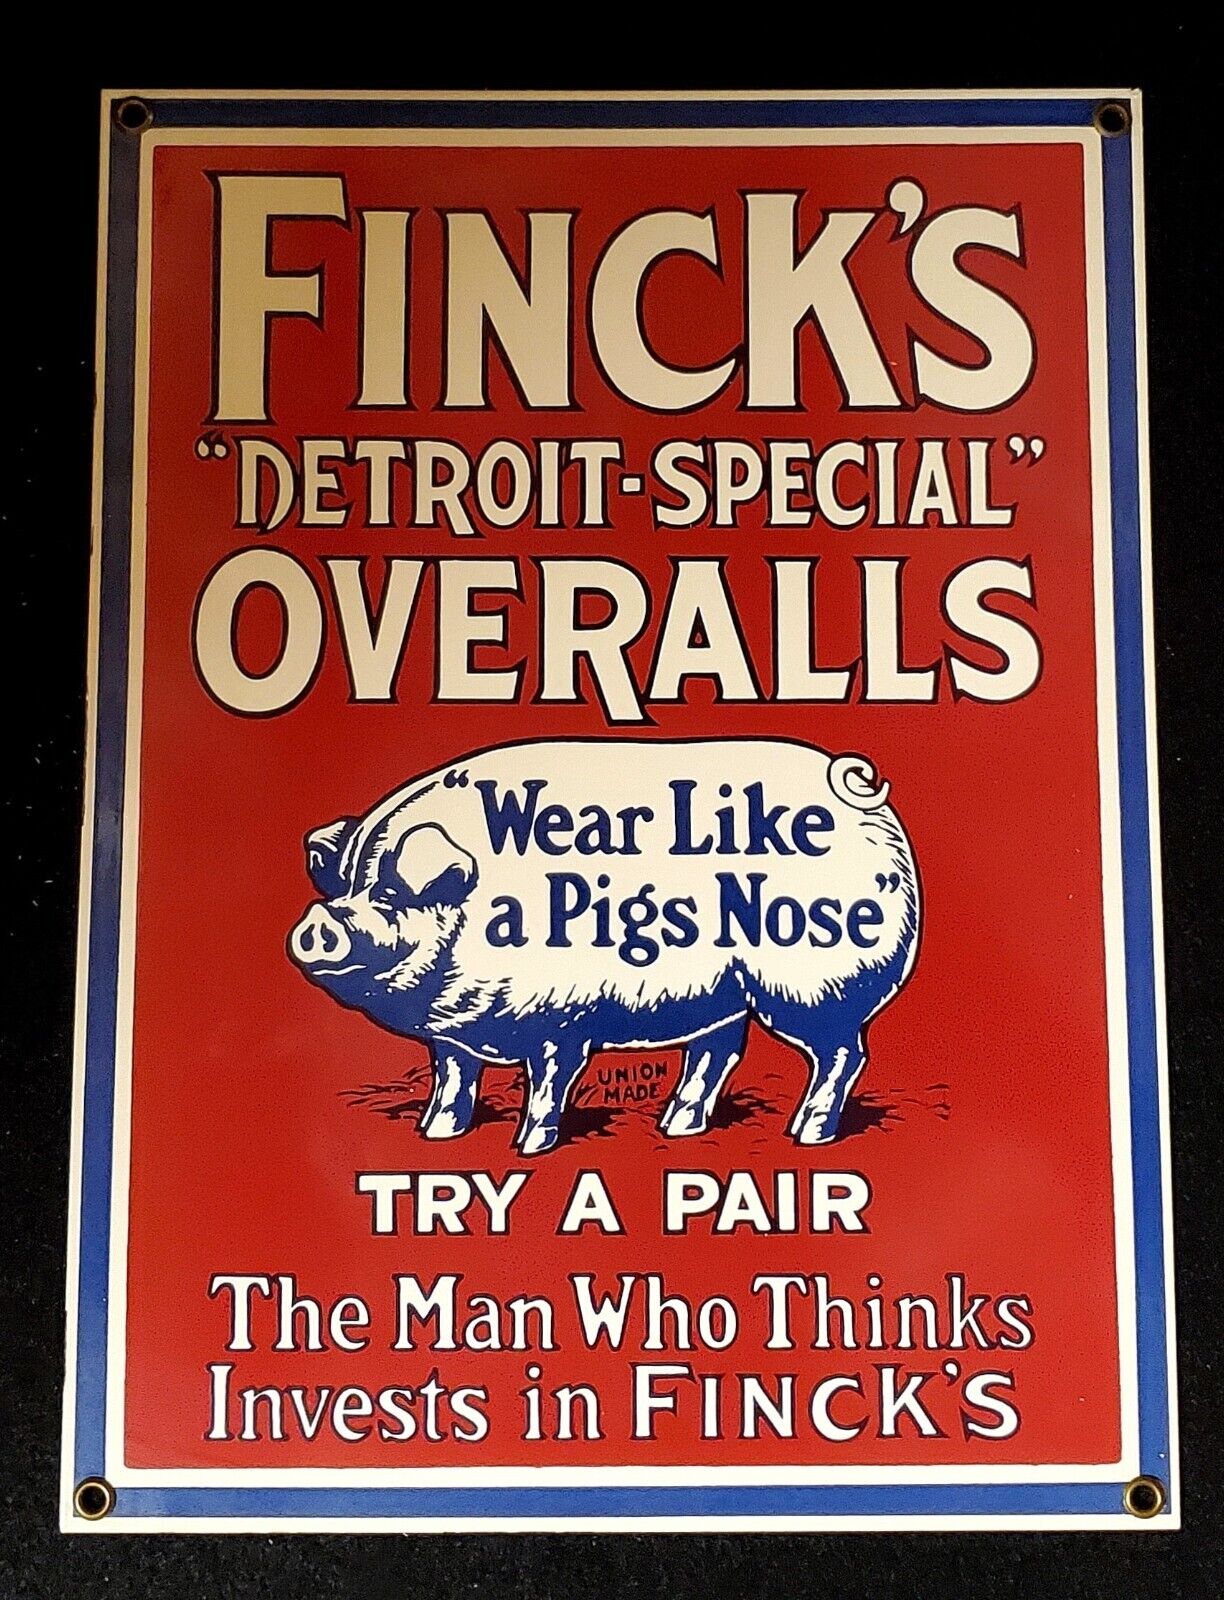 Vintage Finck's “Detroit Special” Overalls Pig Advertising Porcelain Enamel Sign